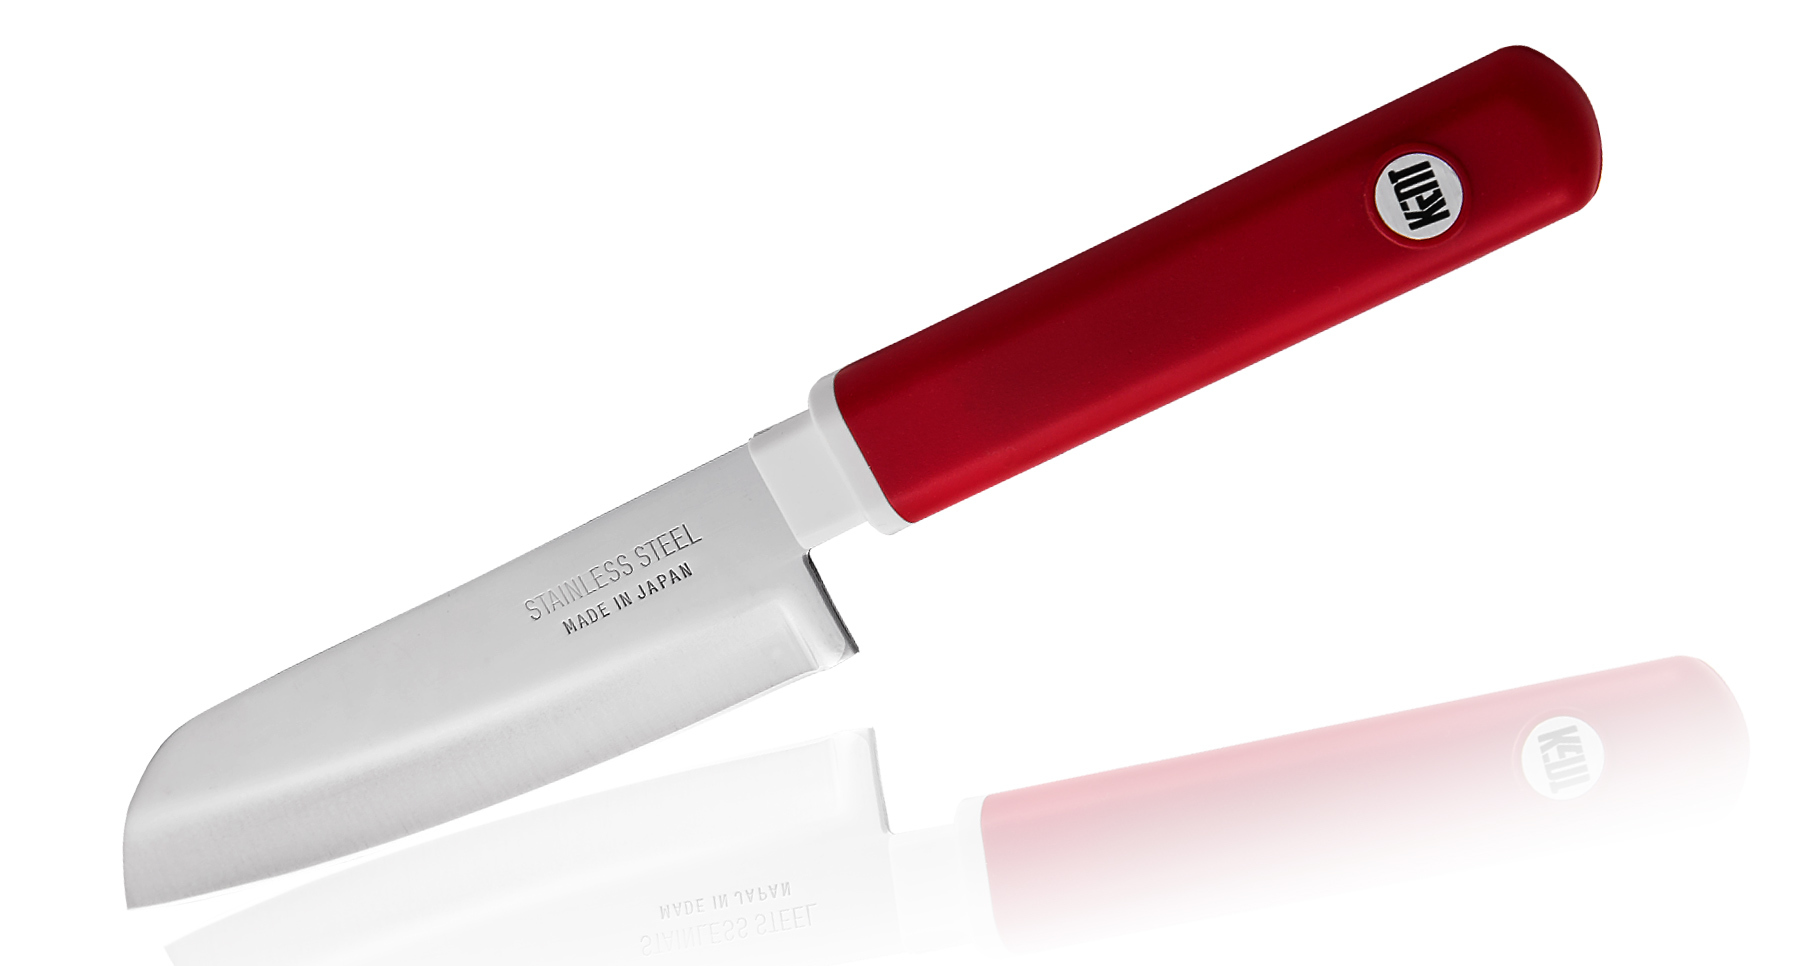 нож кухонный поварской японский шеф нож fuji cutlery сталь mo v лезвие 18 см япония Кухонный нож овощной, Special Series, Fuji Cutlery, FК-403, сталь Sus420J2, красный